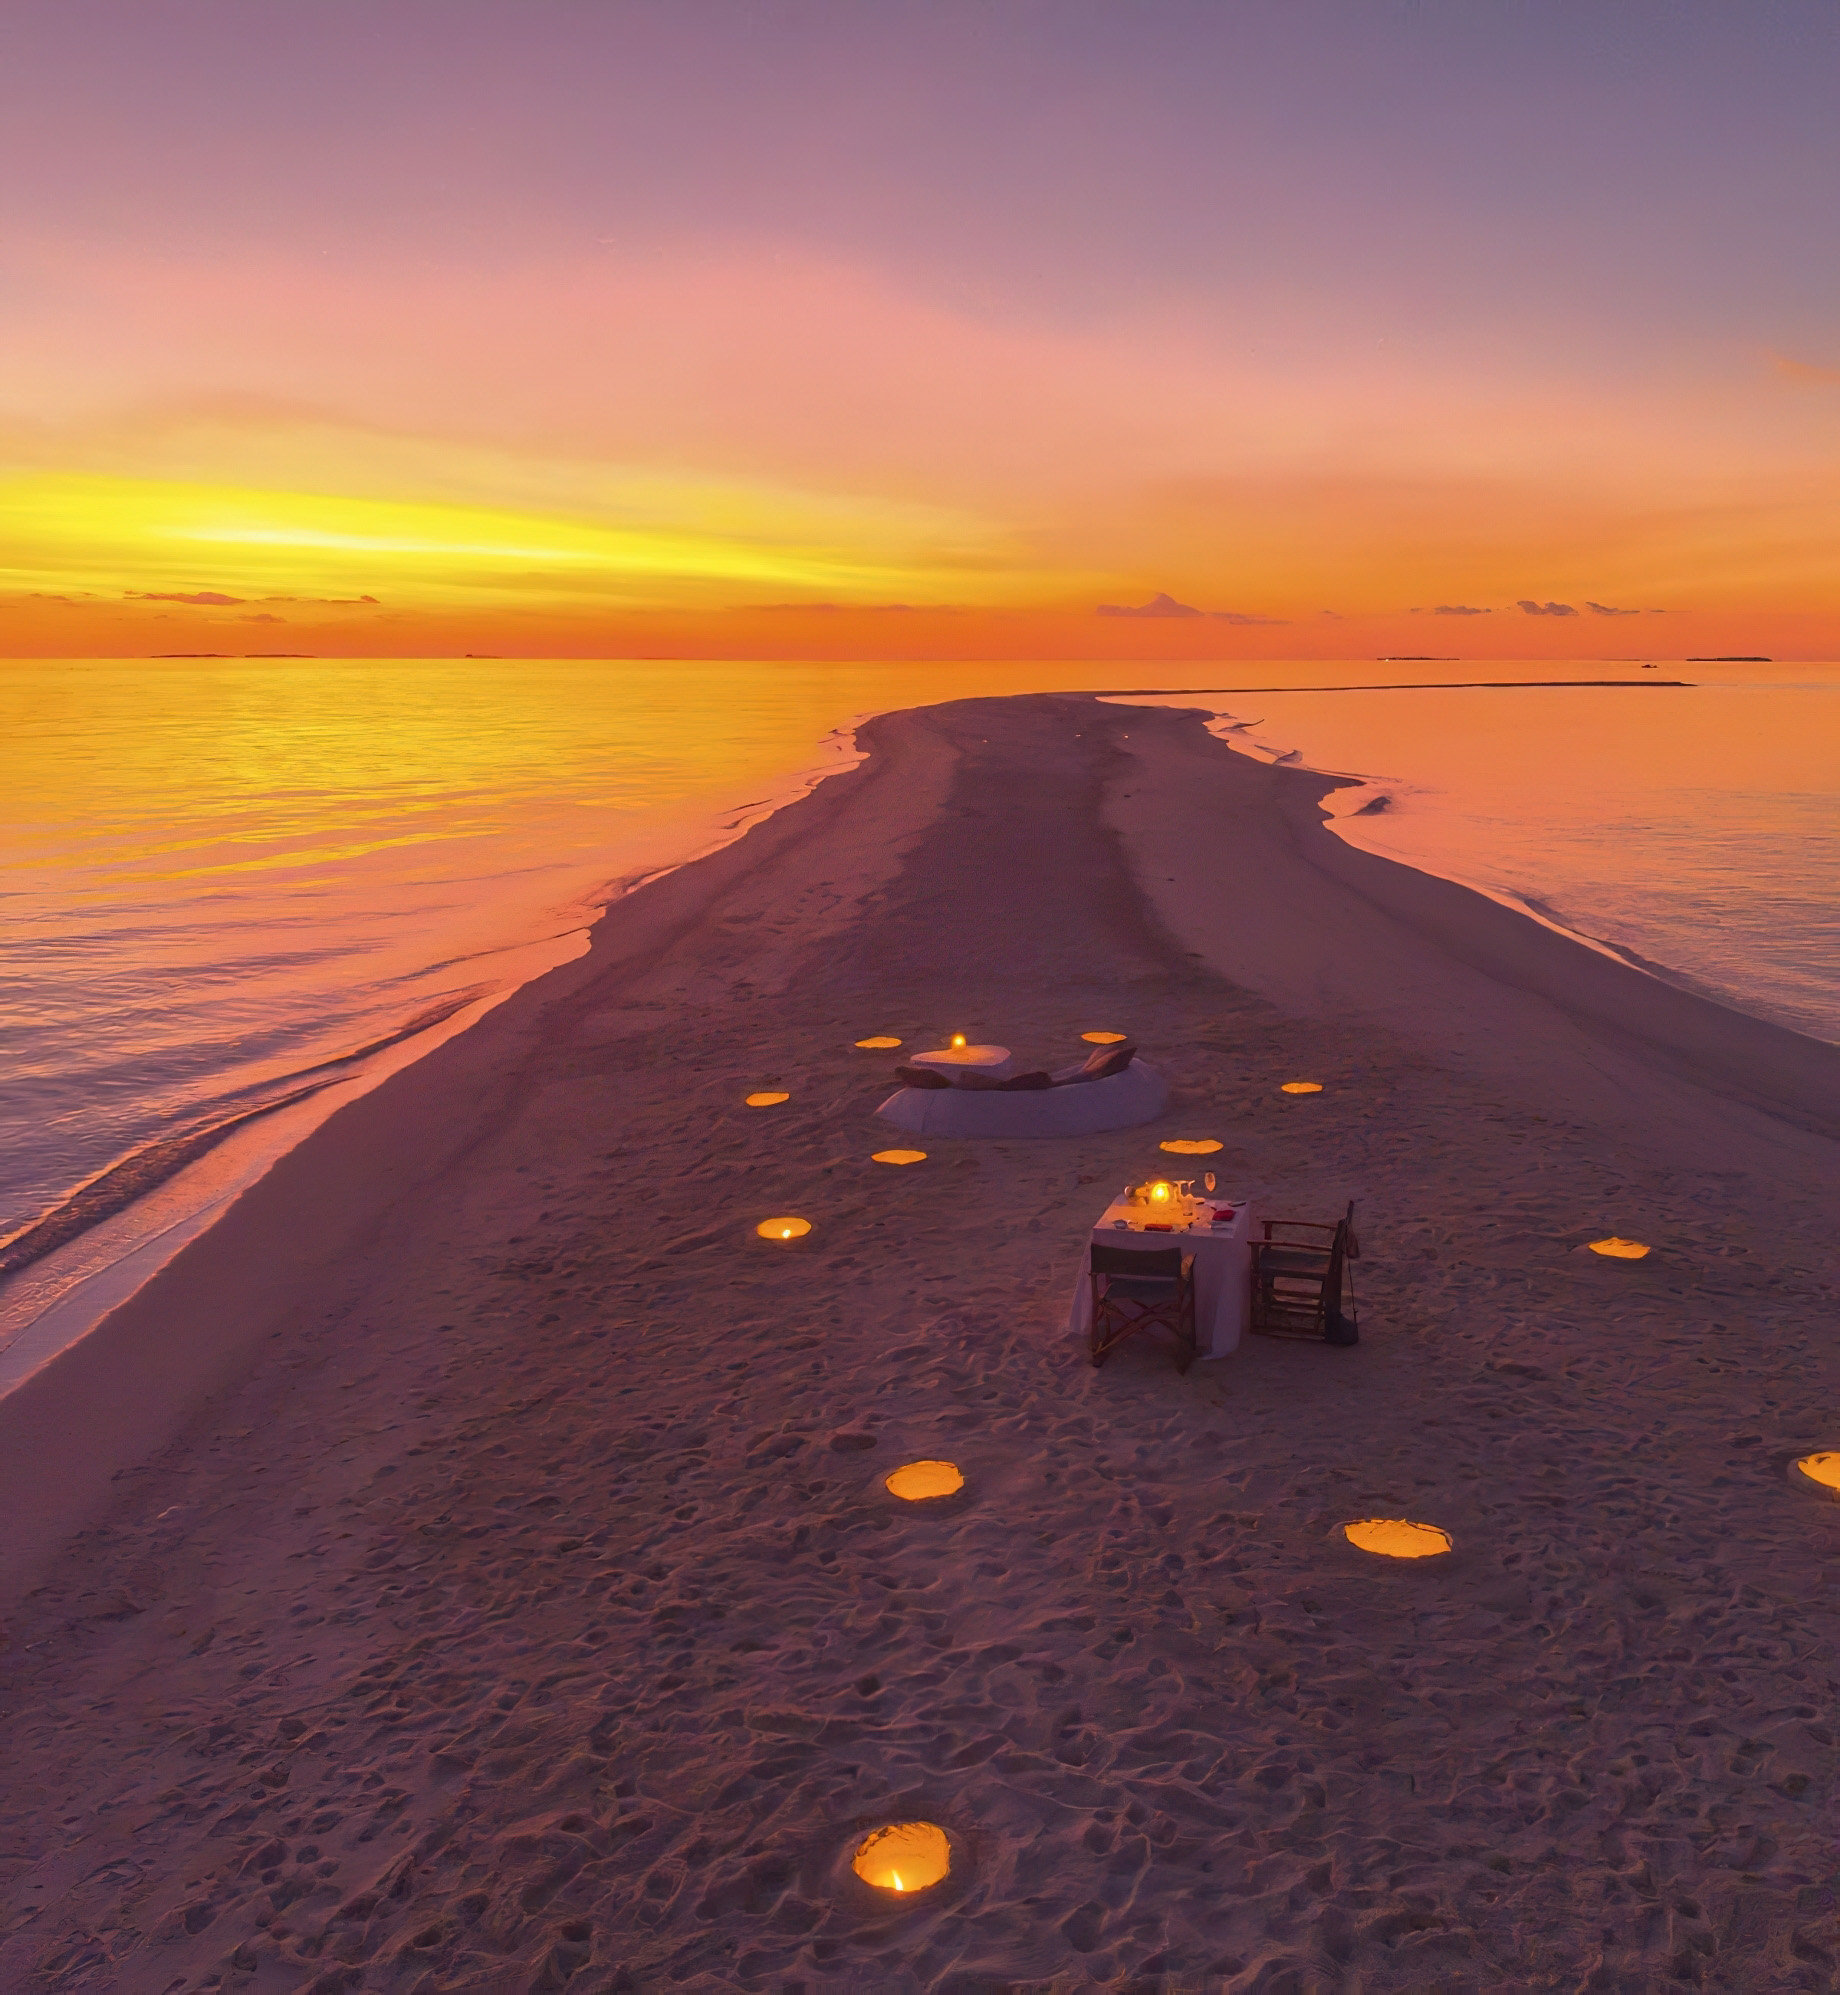 Anantara Kihavah Maldives Villas Resort – Baa Atoll, Maldives – Beach Dining Sunset